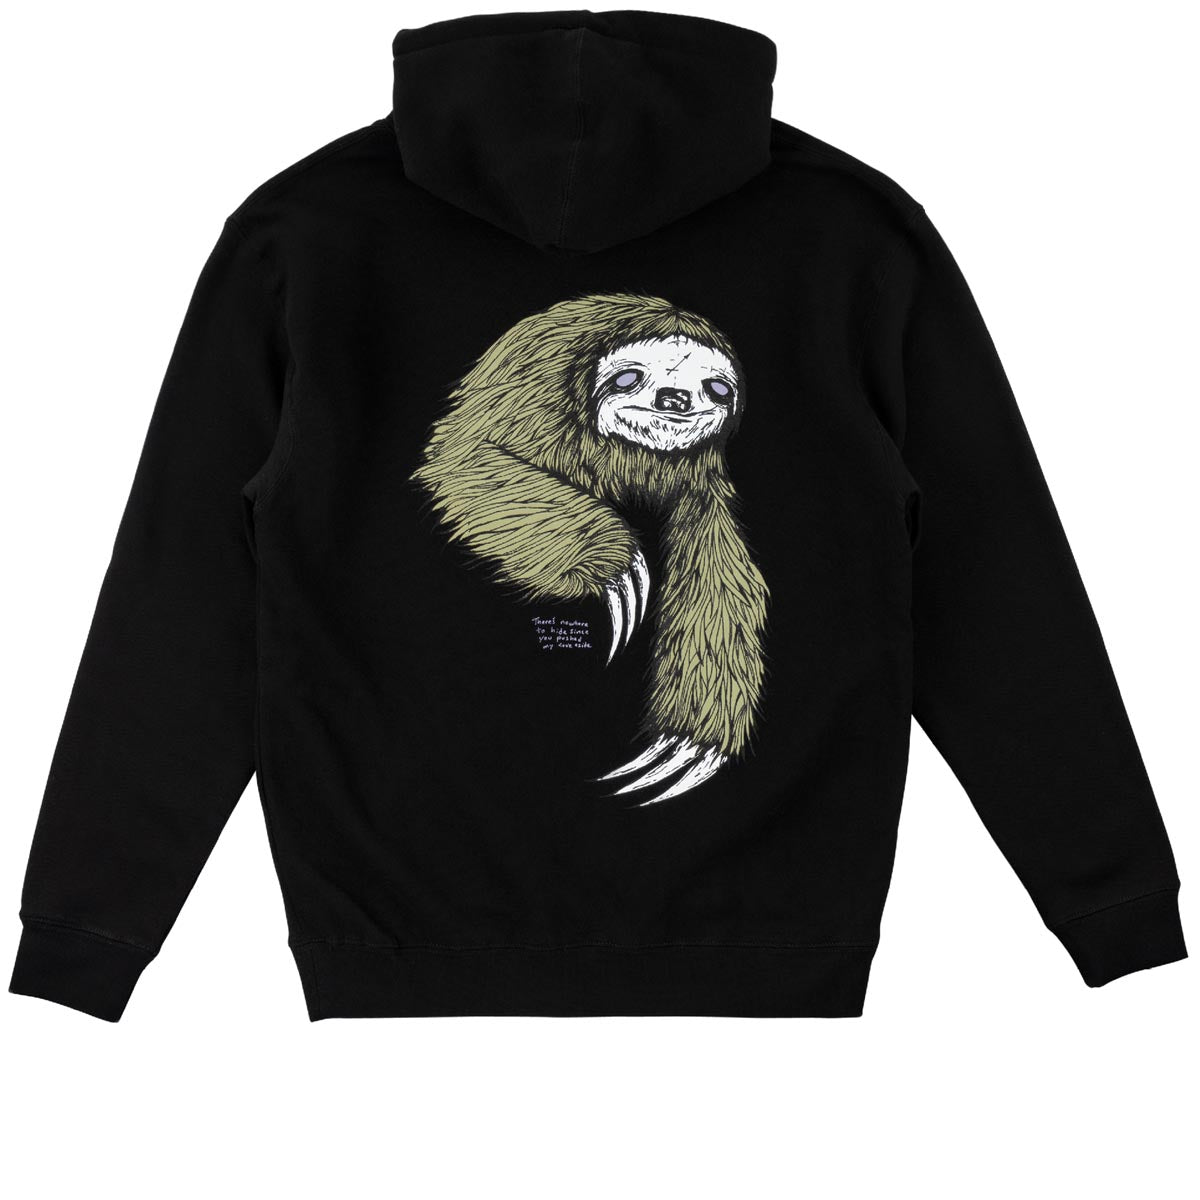 Welcome Sloth Hoodie - Black/Sage image 1